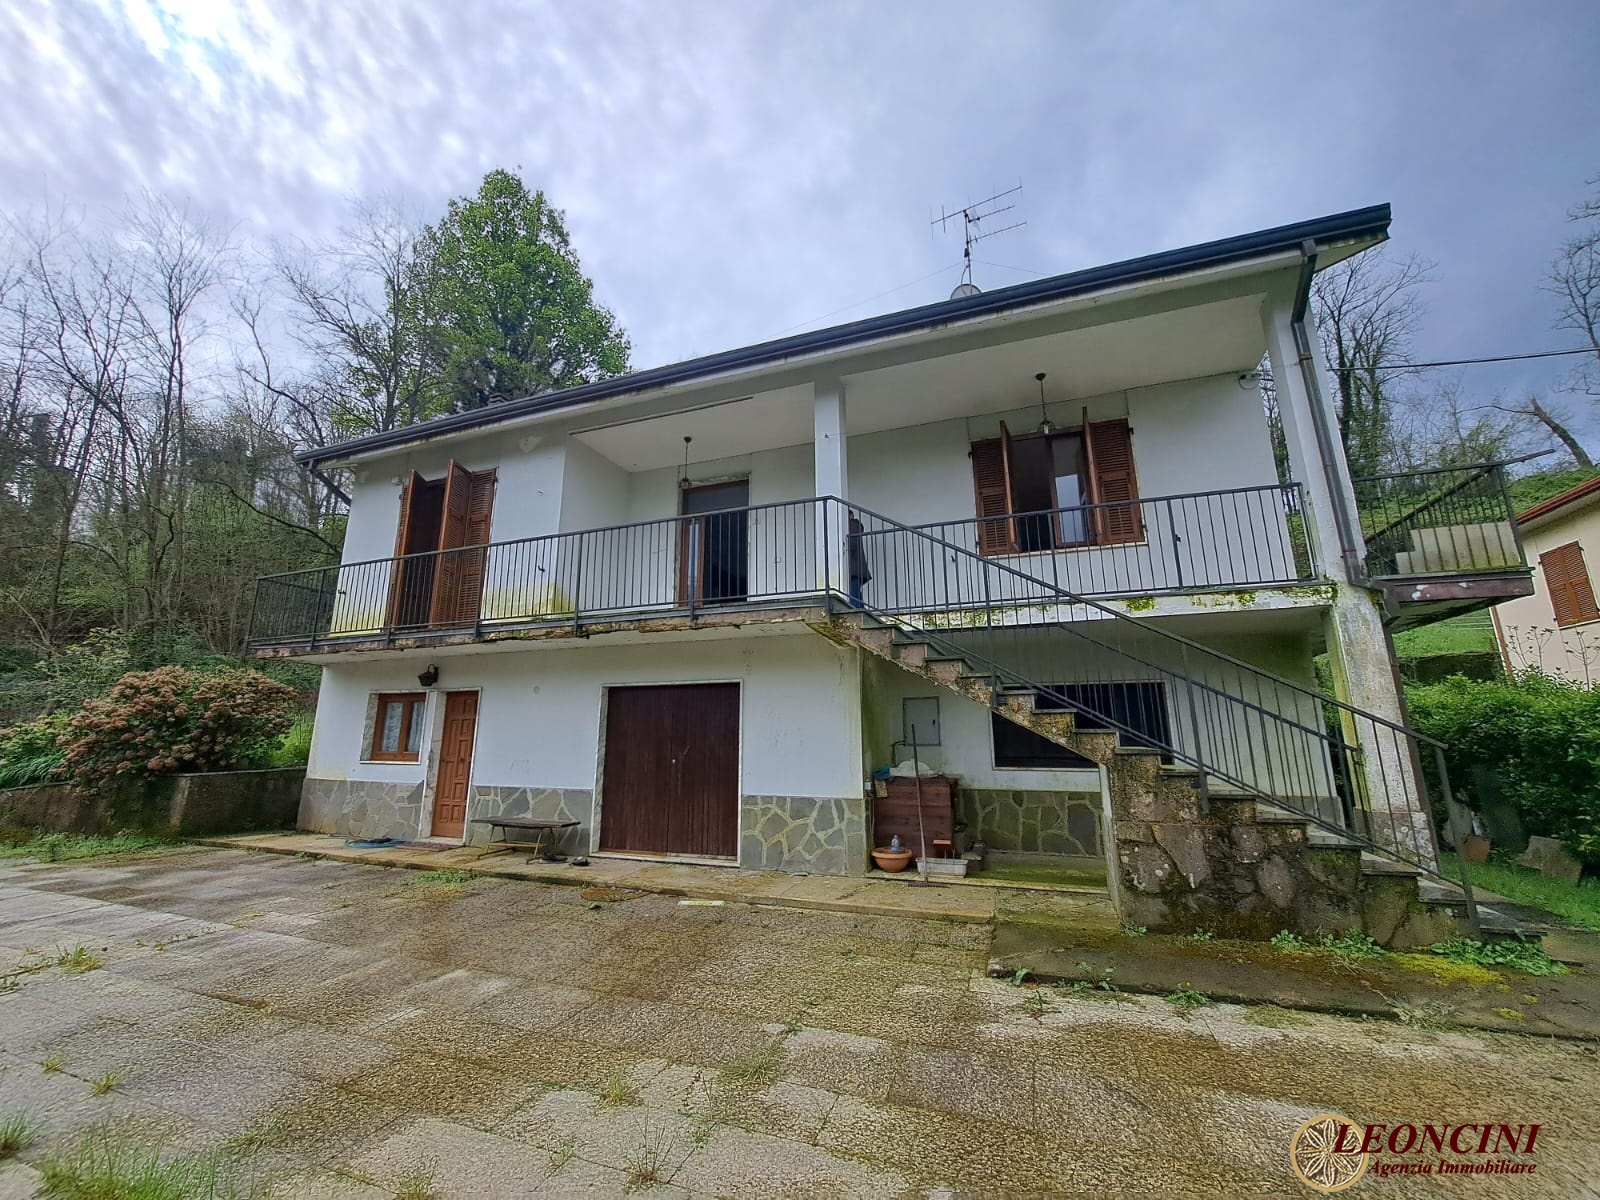 Villa in vendita a Villafranca in Lunigiana, 7 locali, prezzo € 160.000 | PortaleAgenzieImmobiliari.it